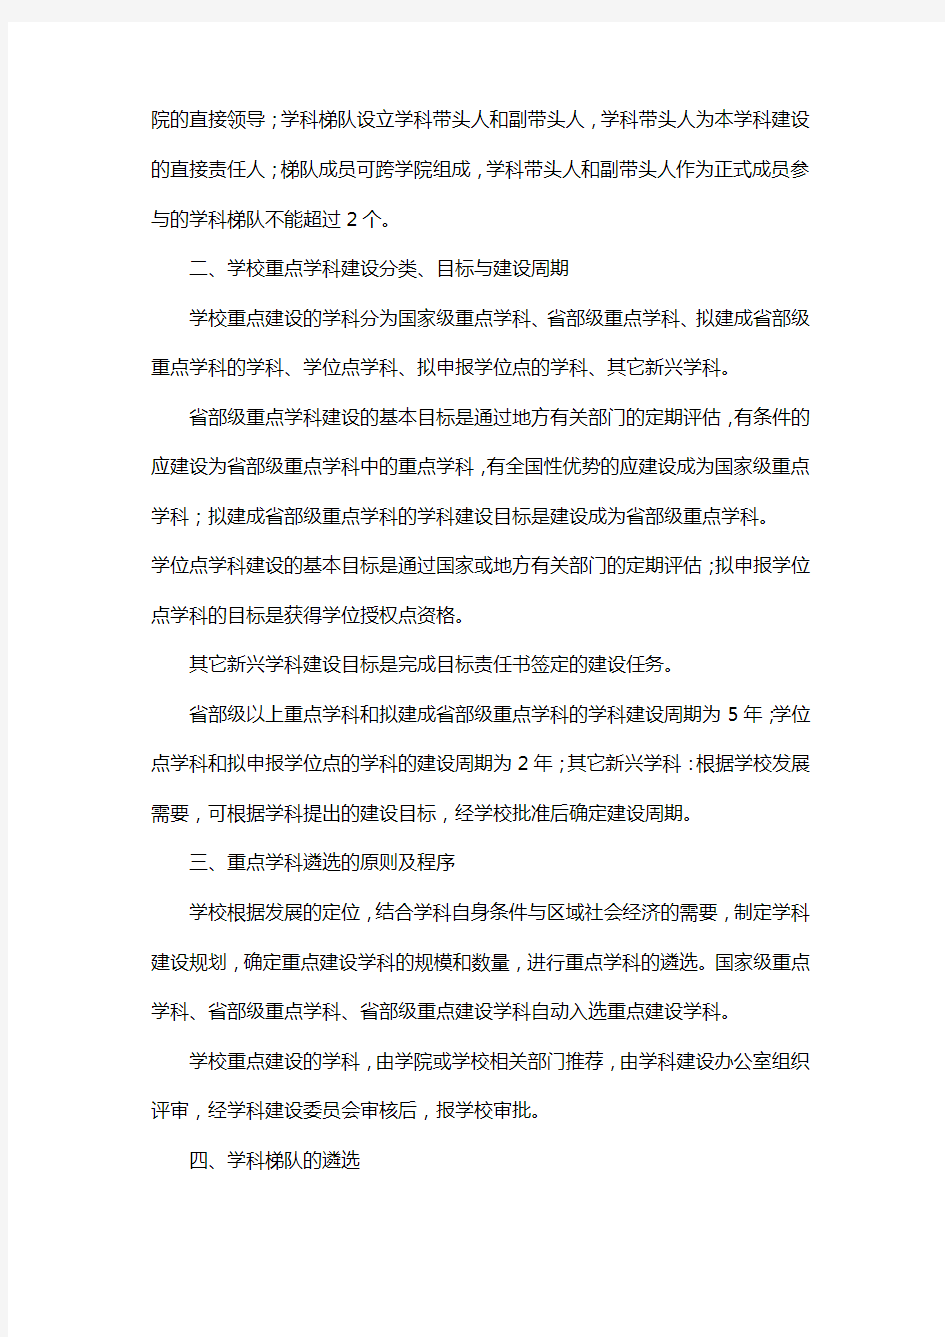 22重庆交通大学学科建设管理办法(试行)